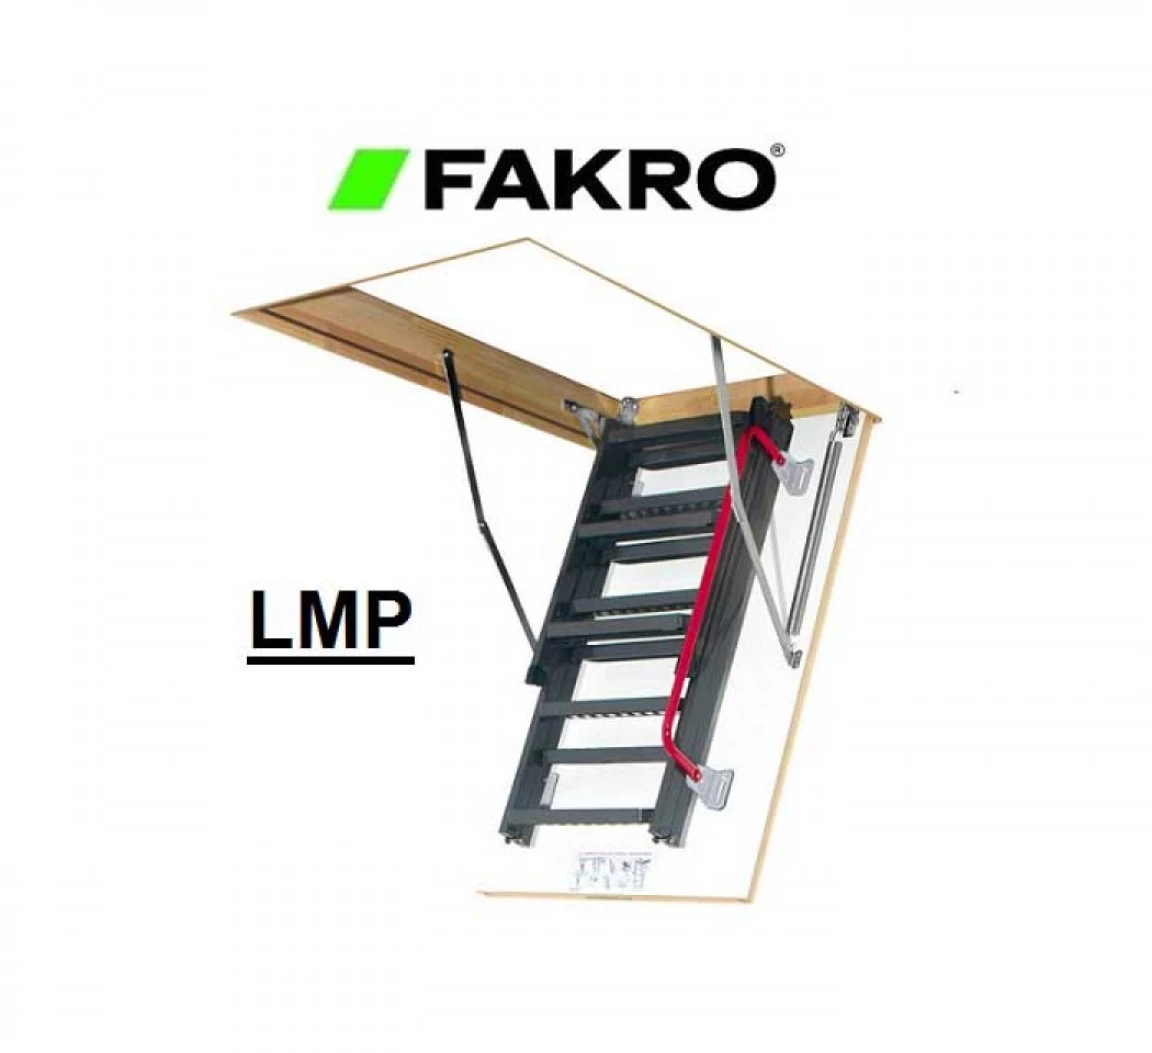 Escalier escamotable en bois LWK, Fakro